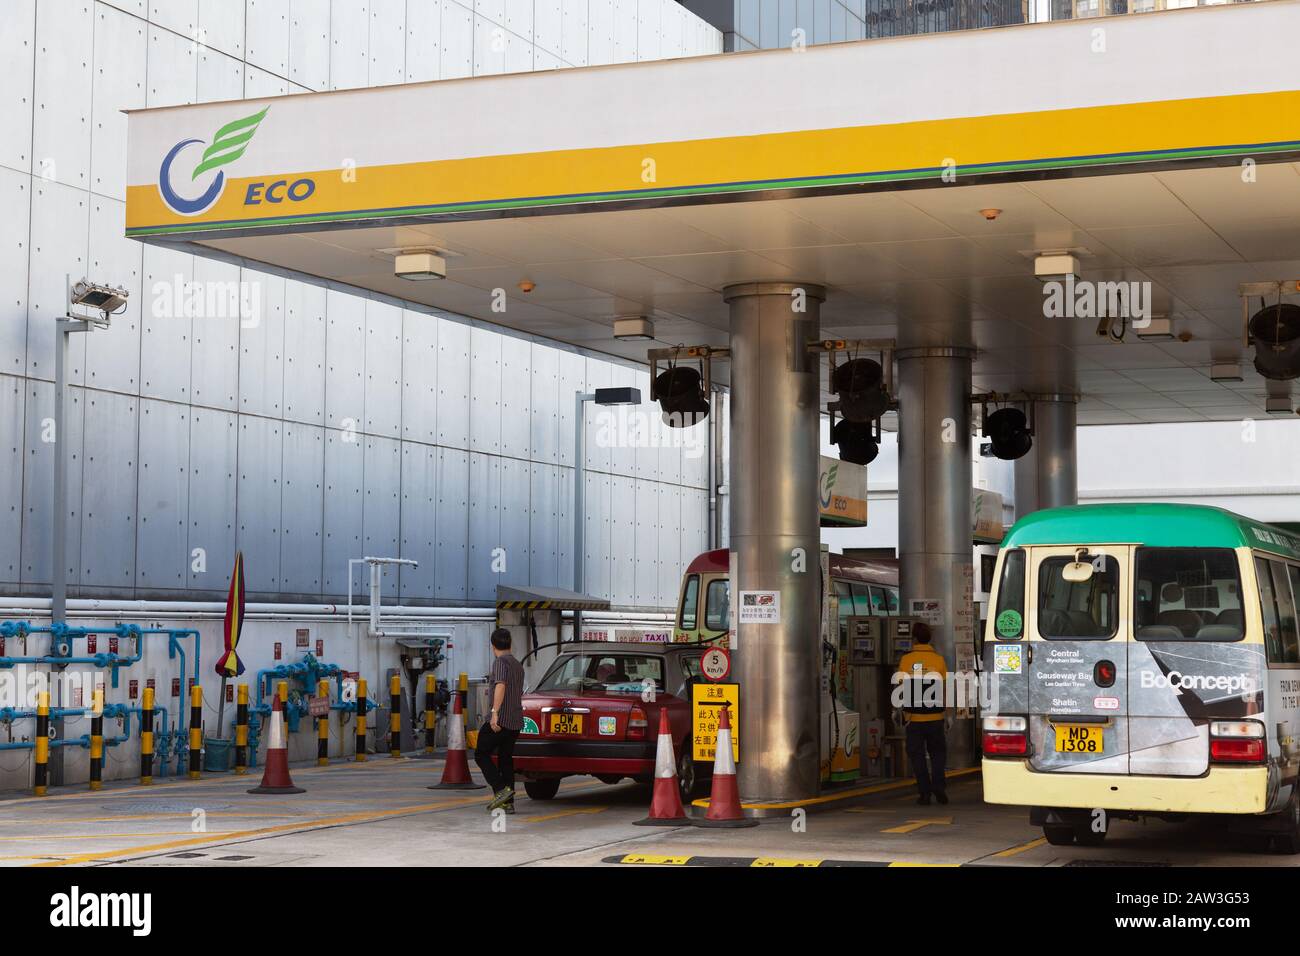 Öko-LPG-Tankstelle, umweltfreundlicher Treibstoff für Fahrzeuge, mit Fahrzeugbetankung; Hongkong Asien Stockfoto